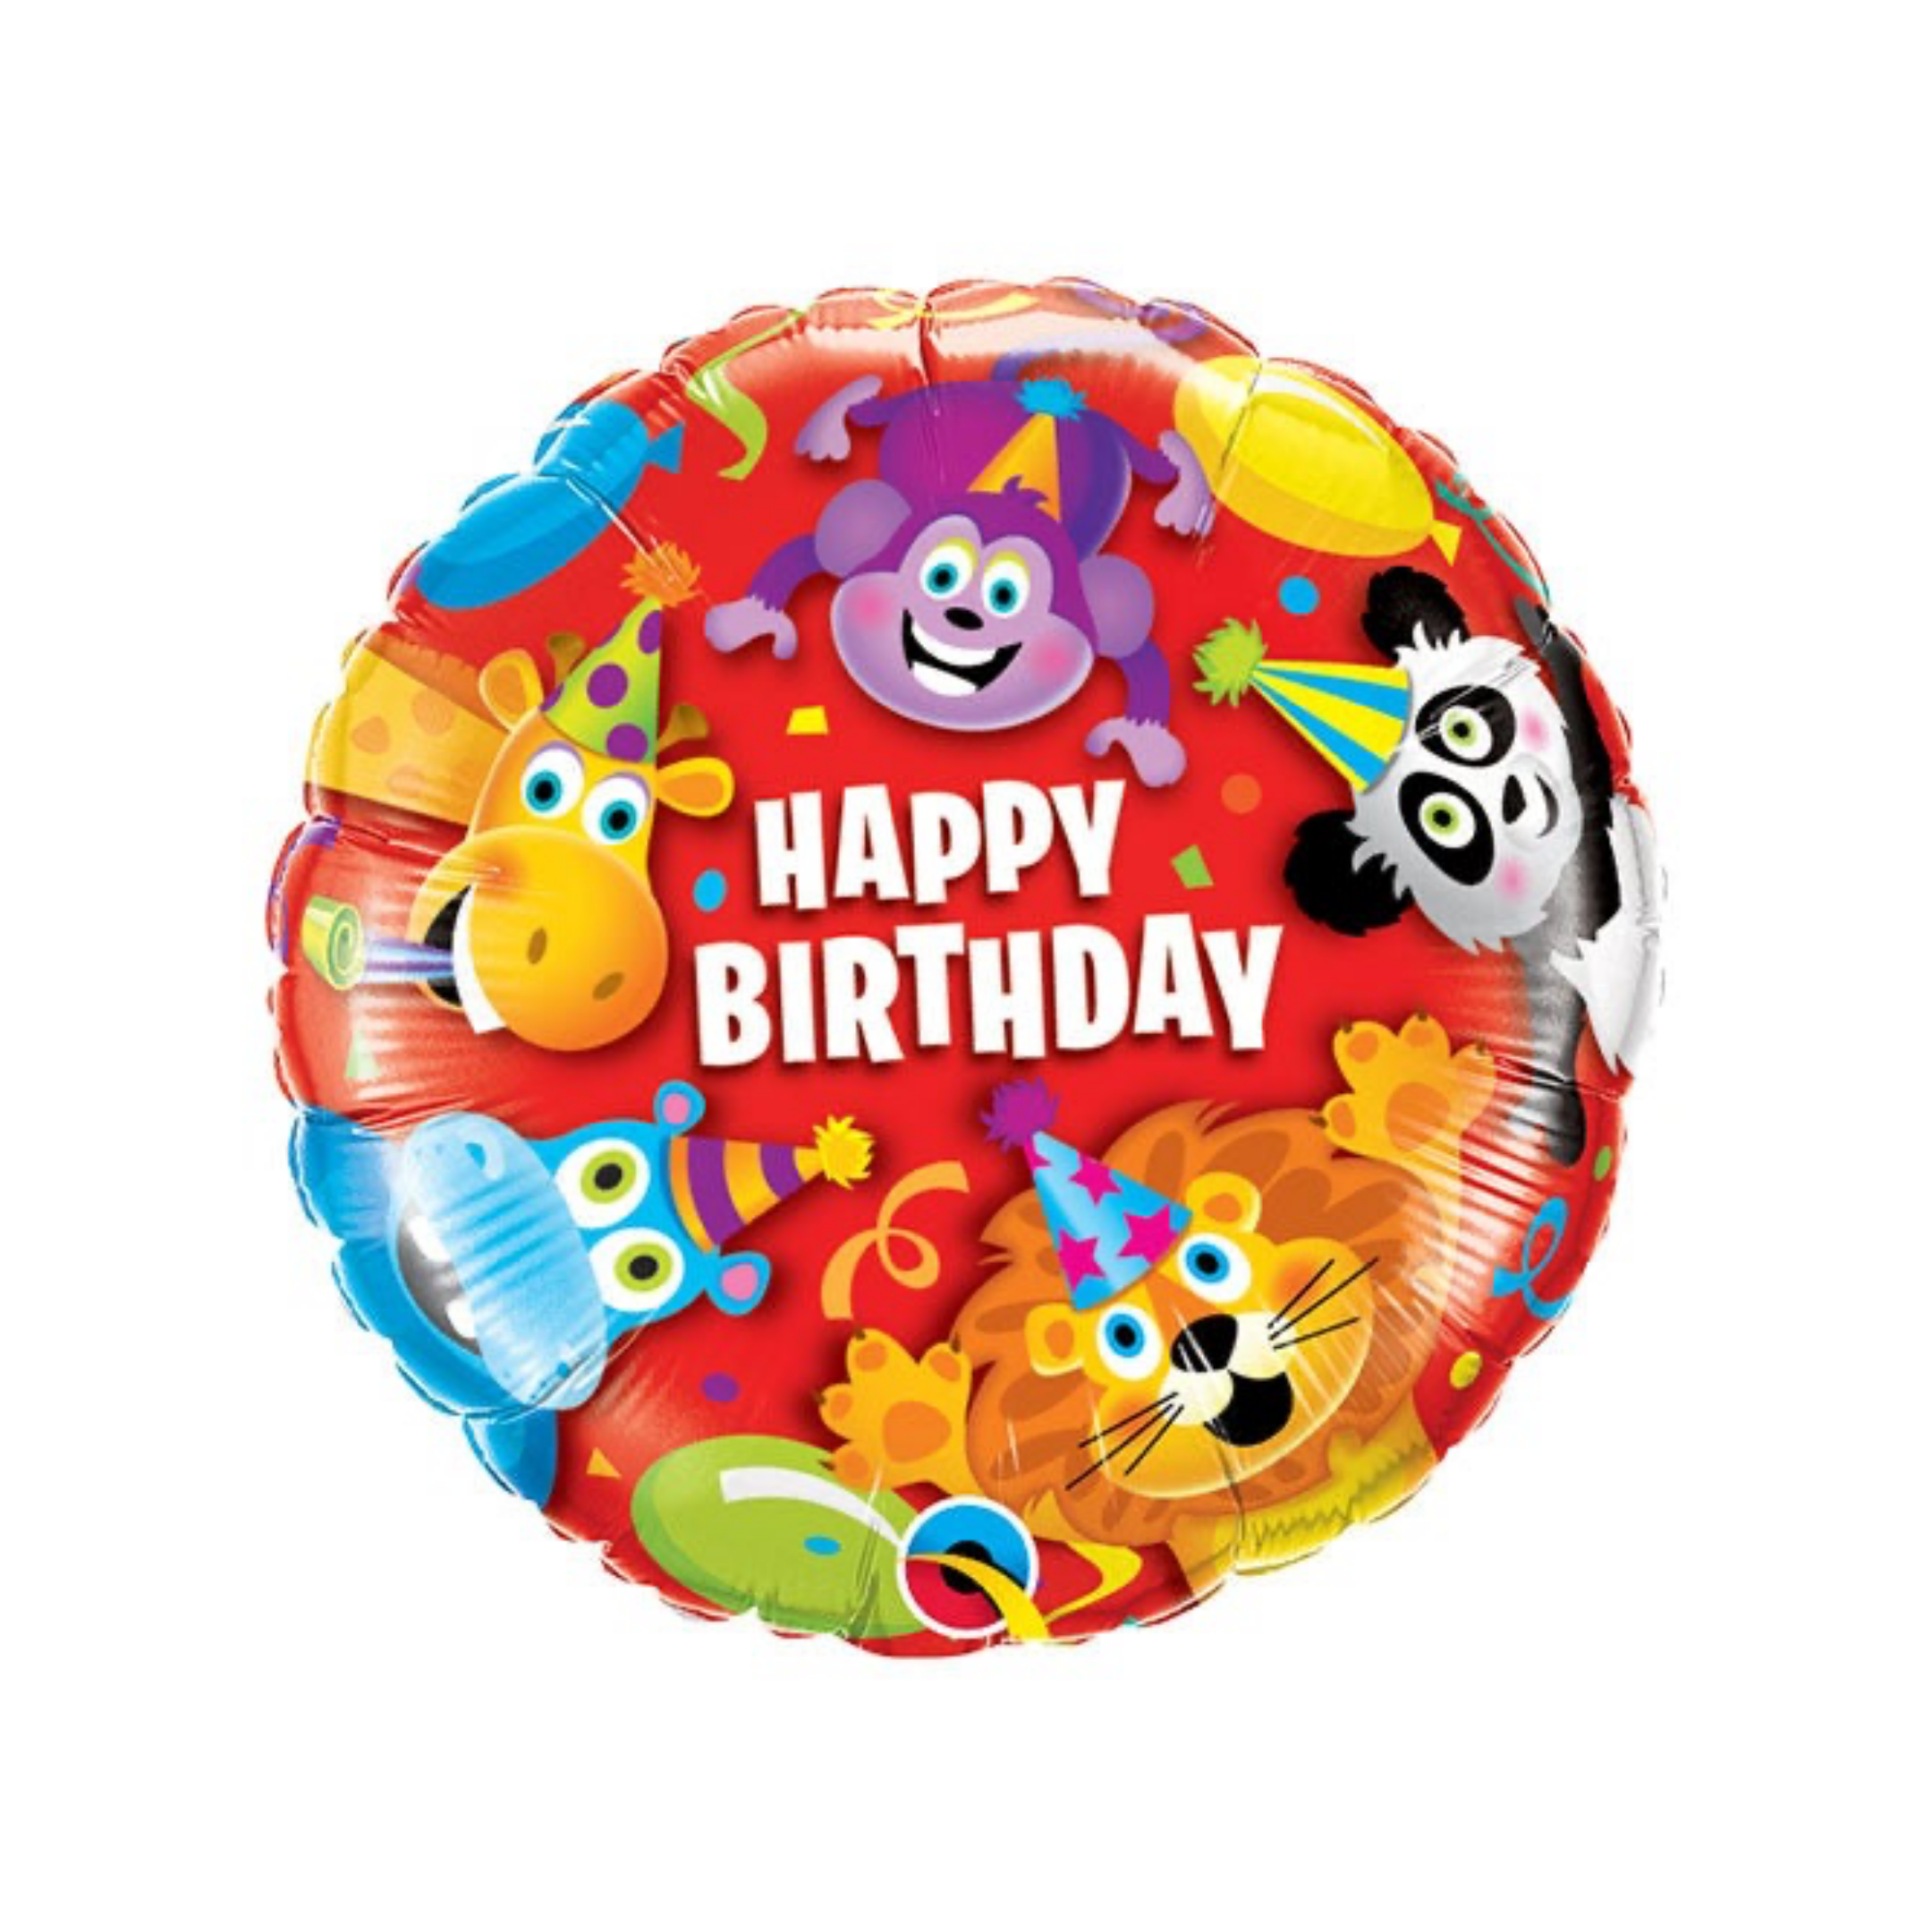 Balon folija - Happy birthday, Party animals